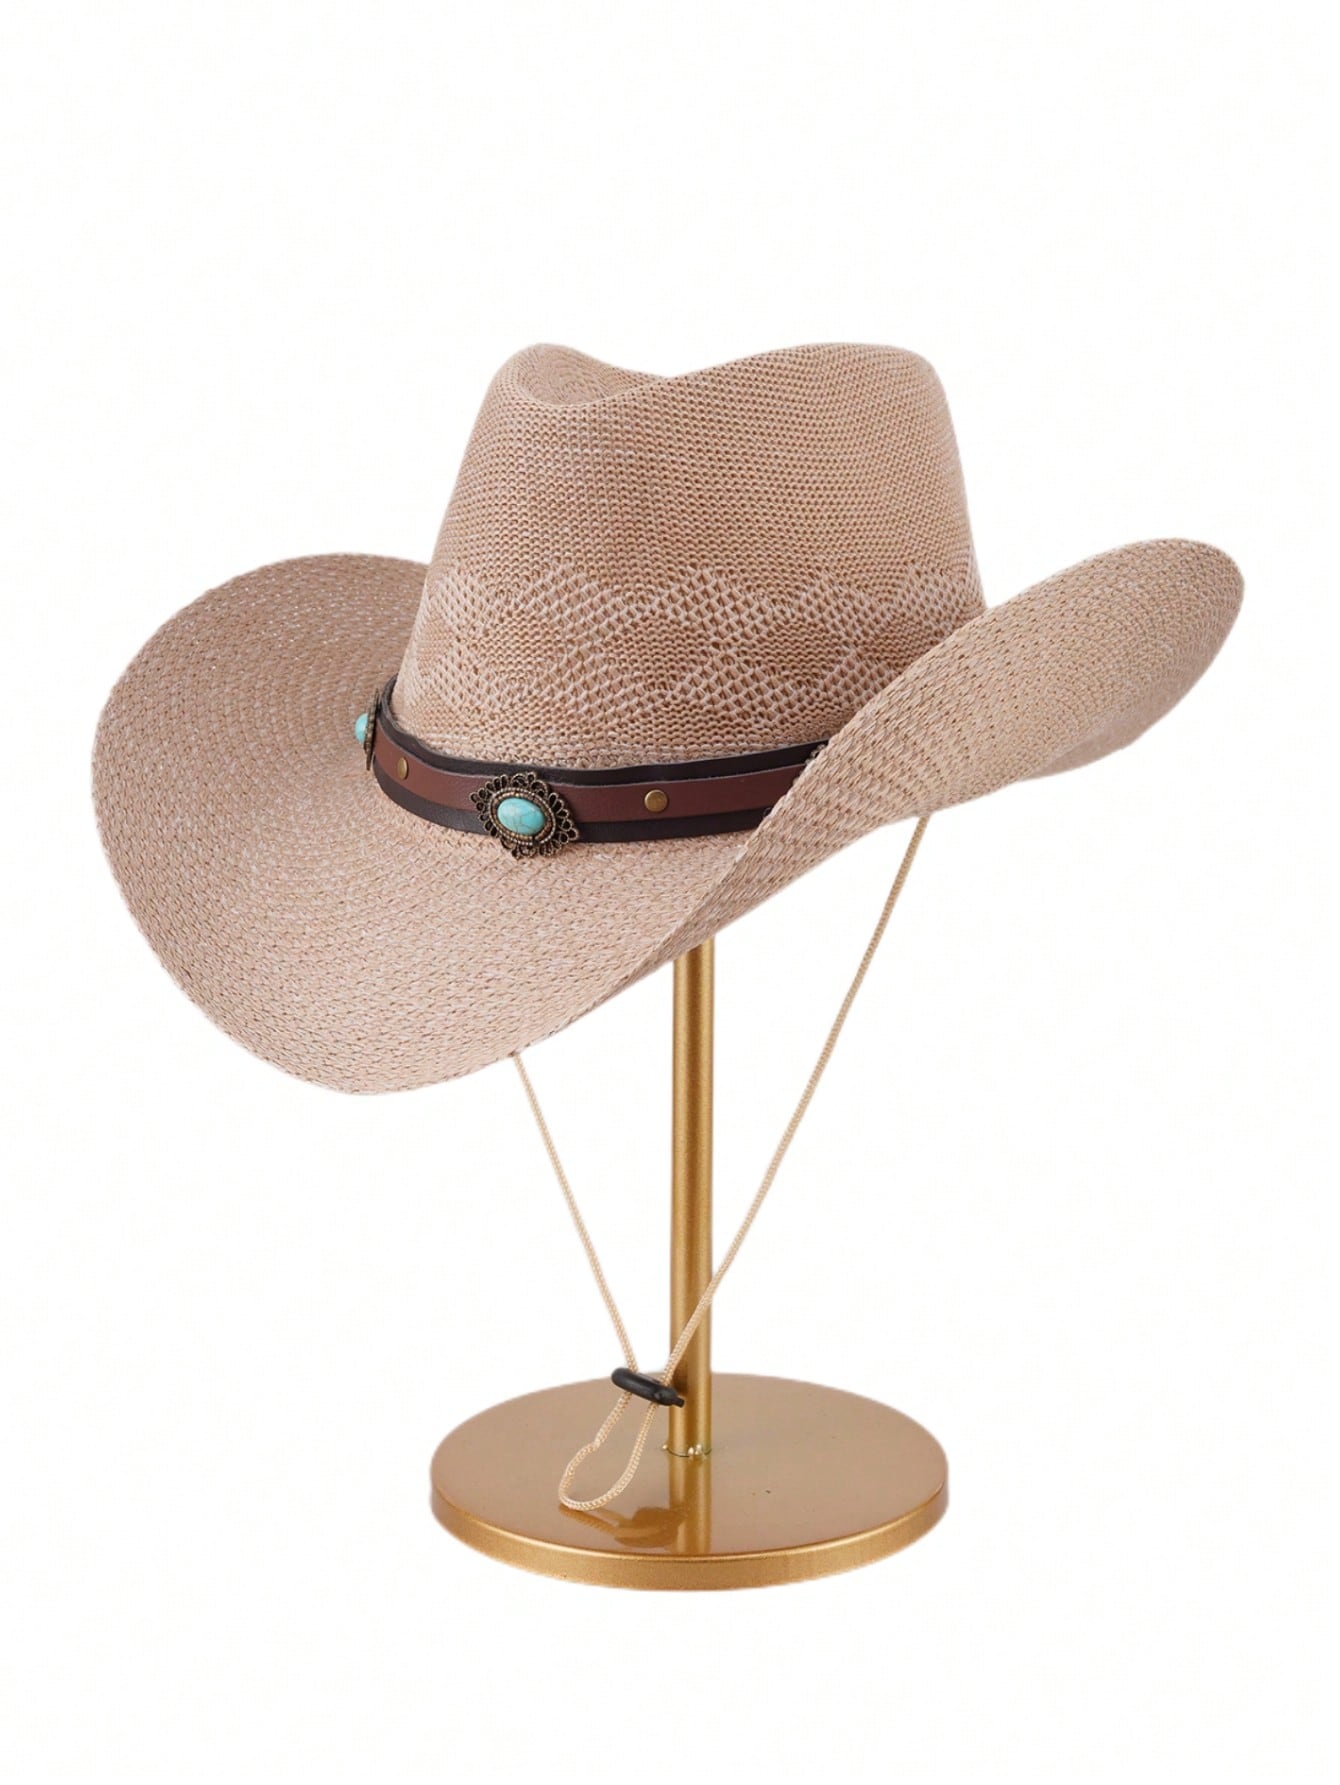 1 шт. джинсовая шляпа от солнца, хаки cokk хлопковая бейсболка шляпа для женщин и мужчин летняя солнцезащитная шляпа для женщин унисекс одноцветная бейсболка 6 панельная кепка